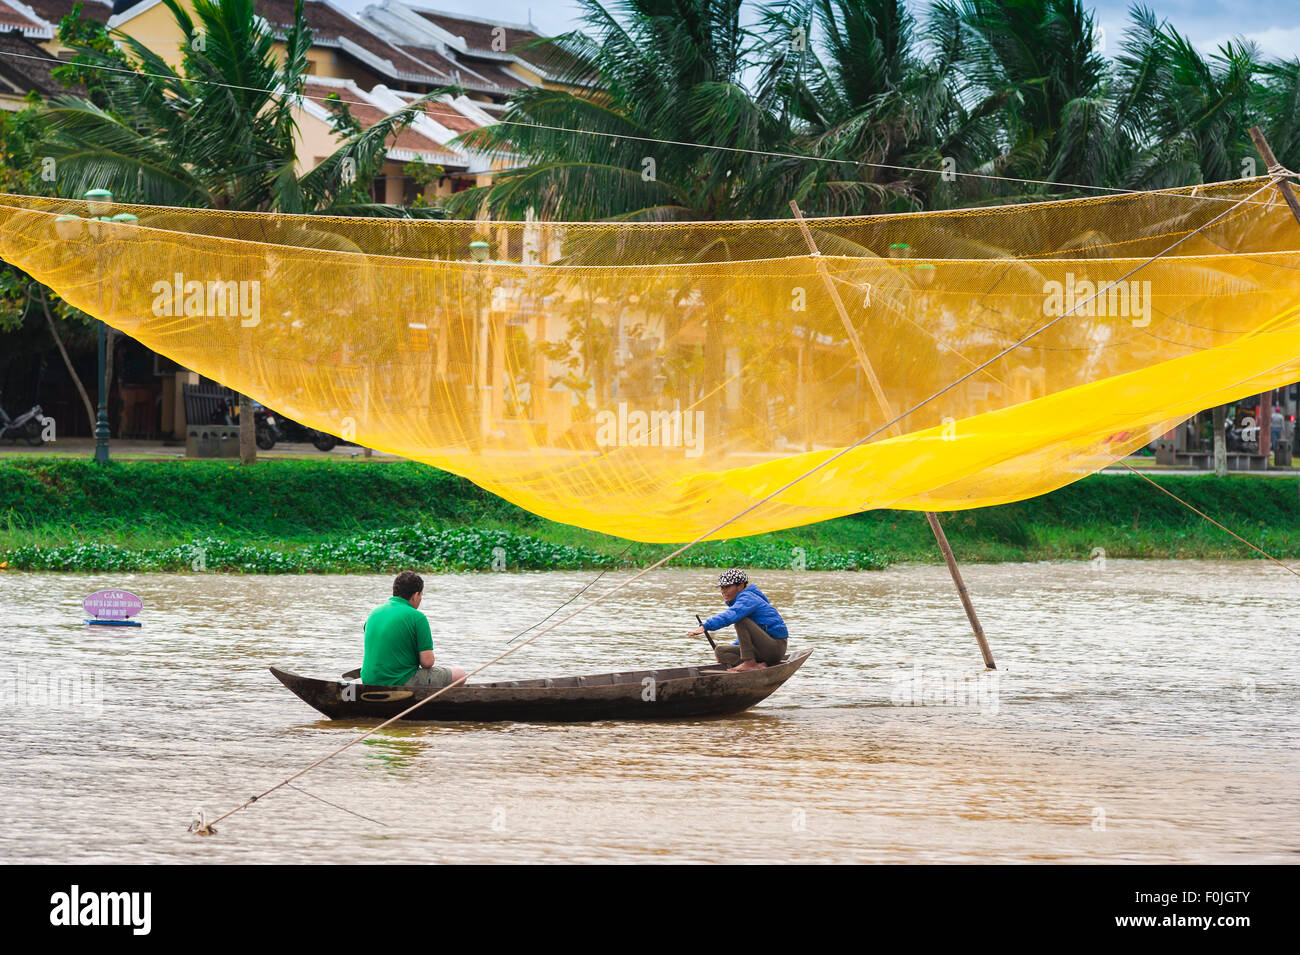 Hoi An river boat, un touriste prend un tour en bateau le long de la rivière Thu Bon à Hoi An en passant par un immense filet de pêche jaune, Central Coast, Vietnam Banque D'Images